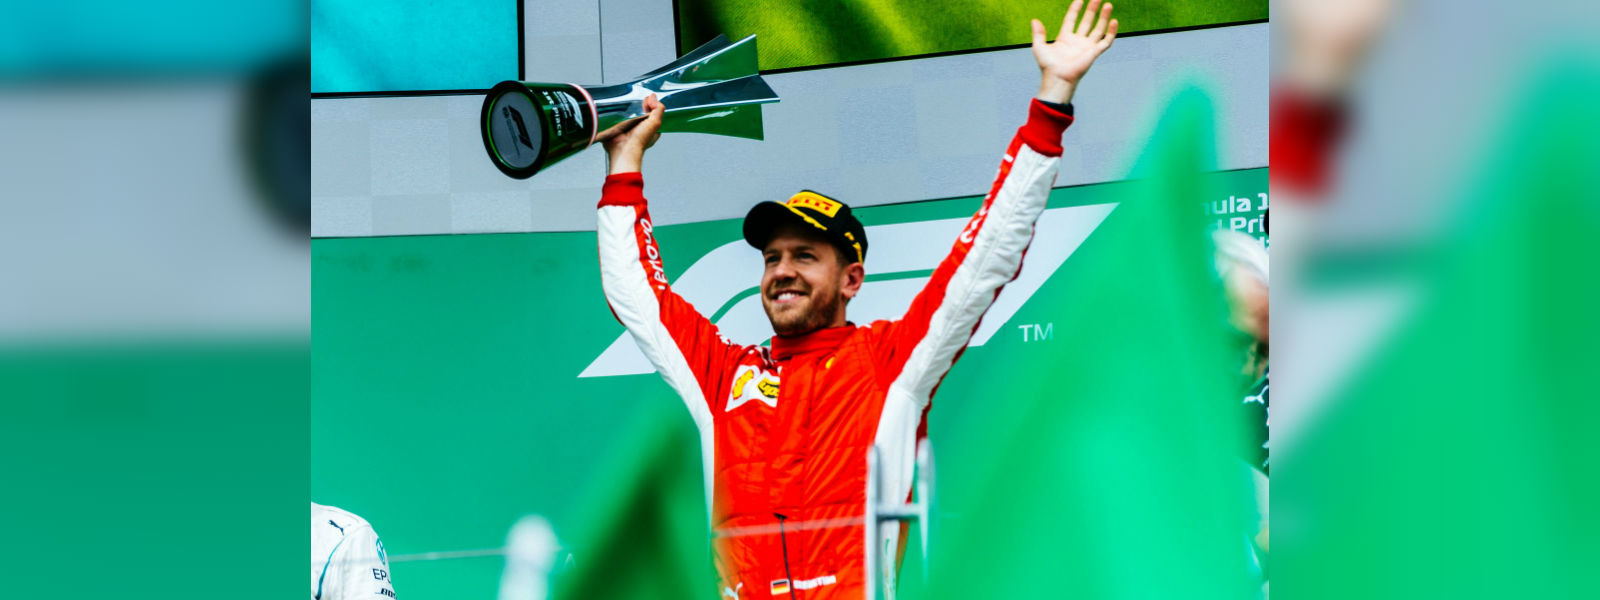 Ferrari's Sebastian Vettel wins Canada GP